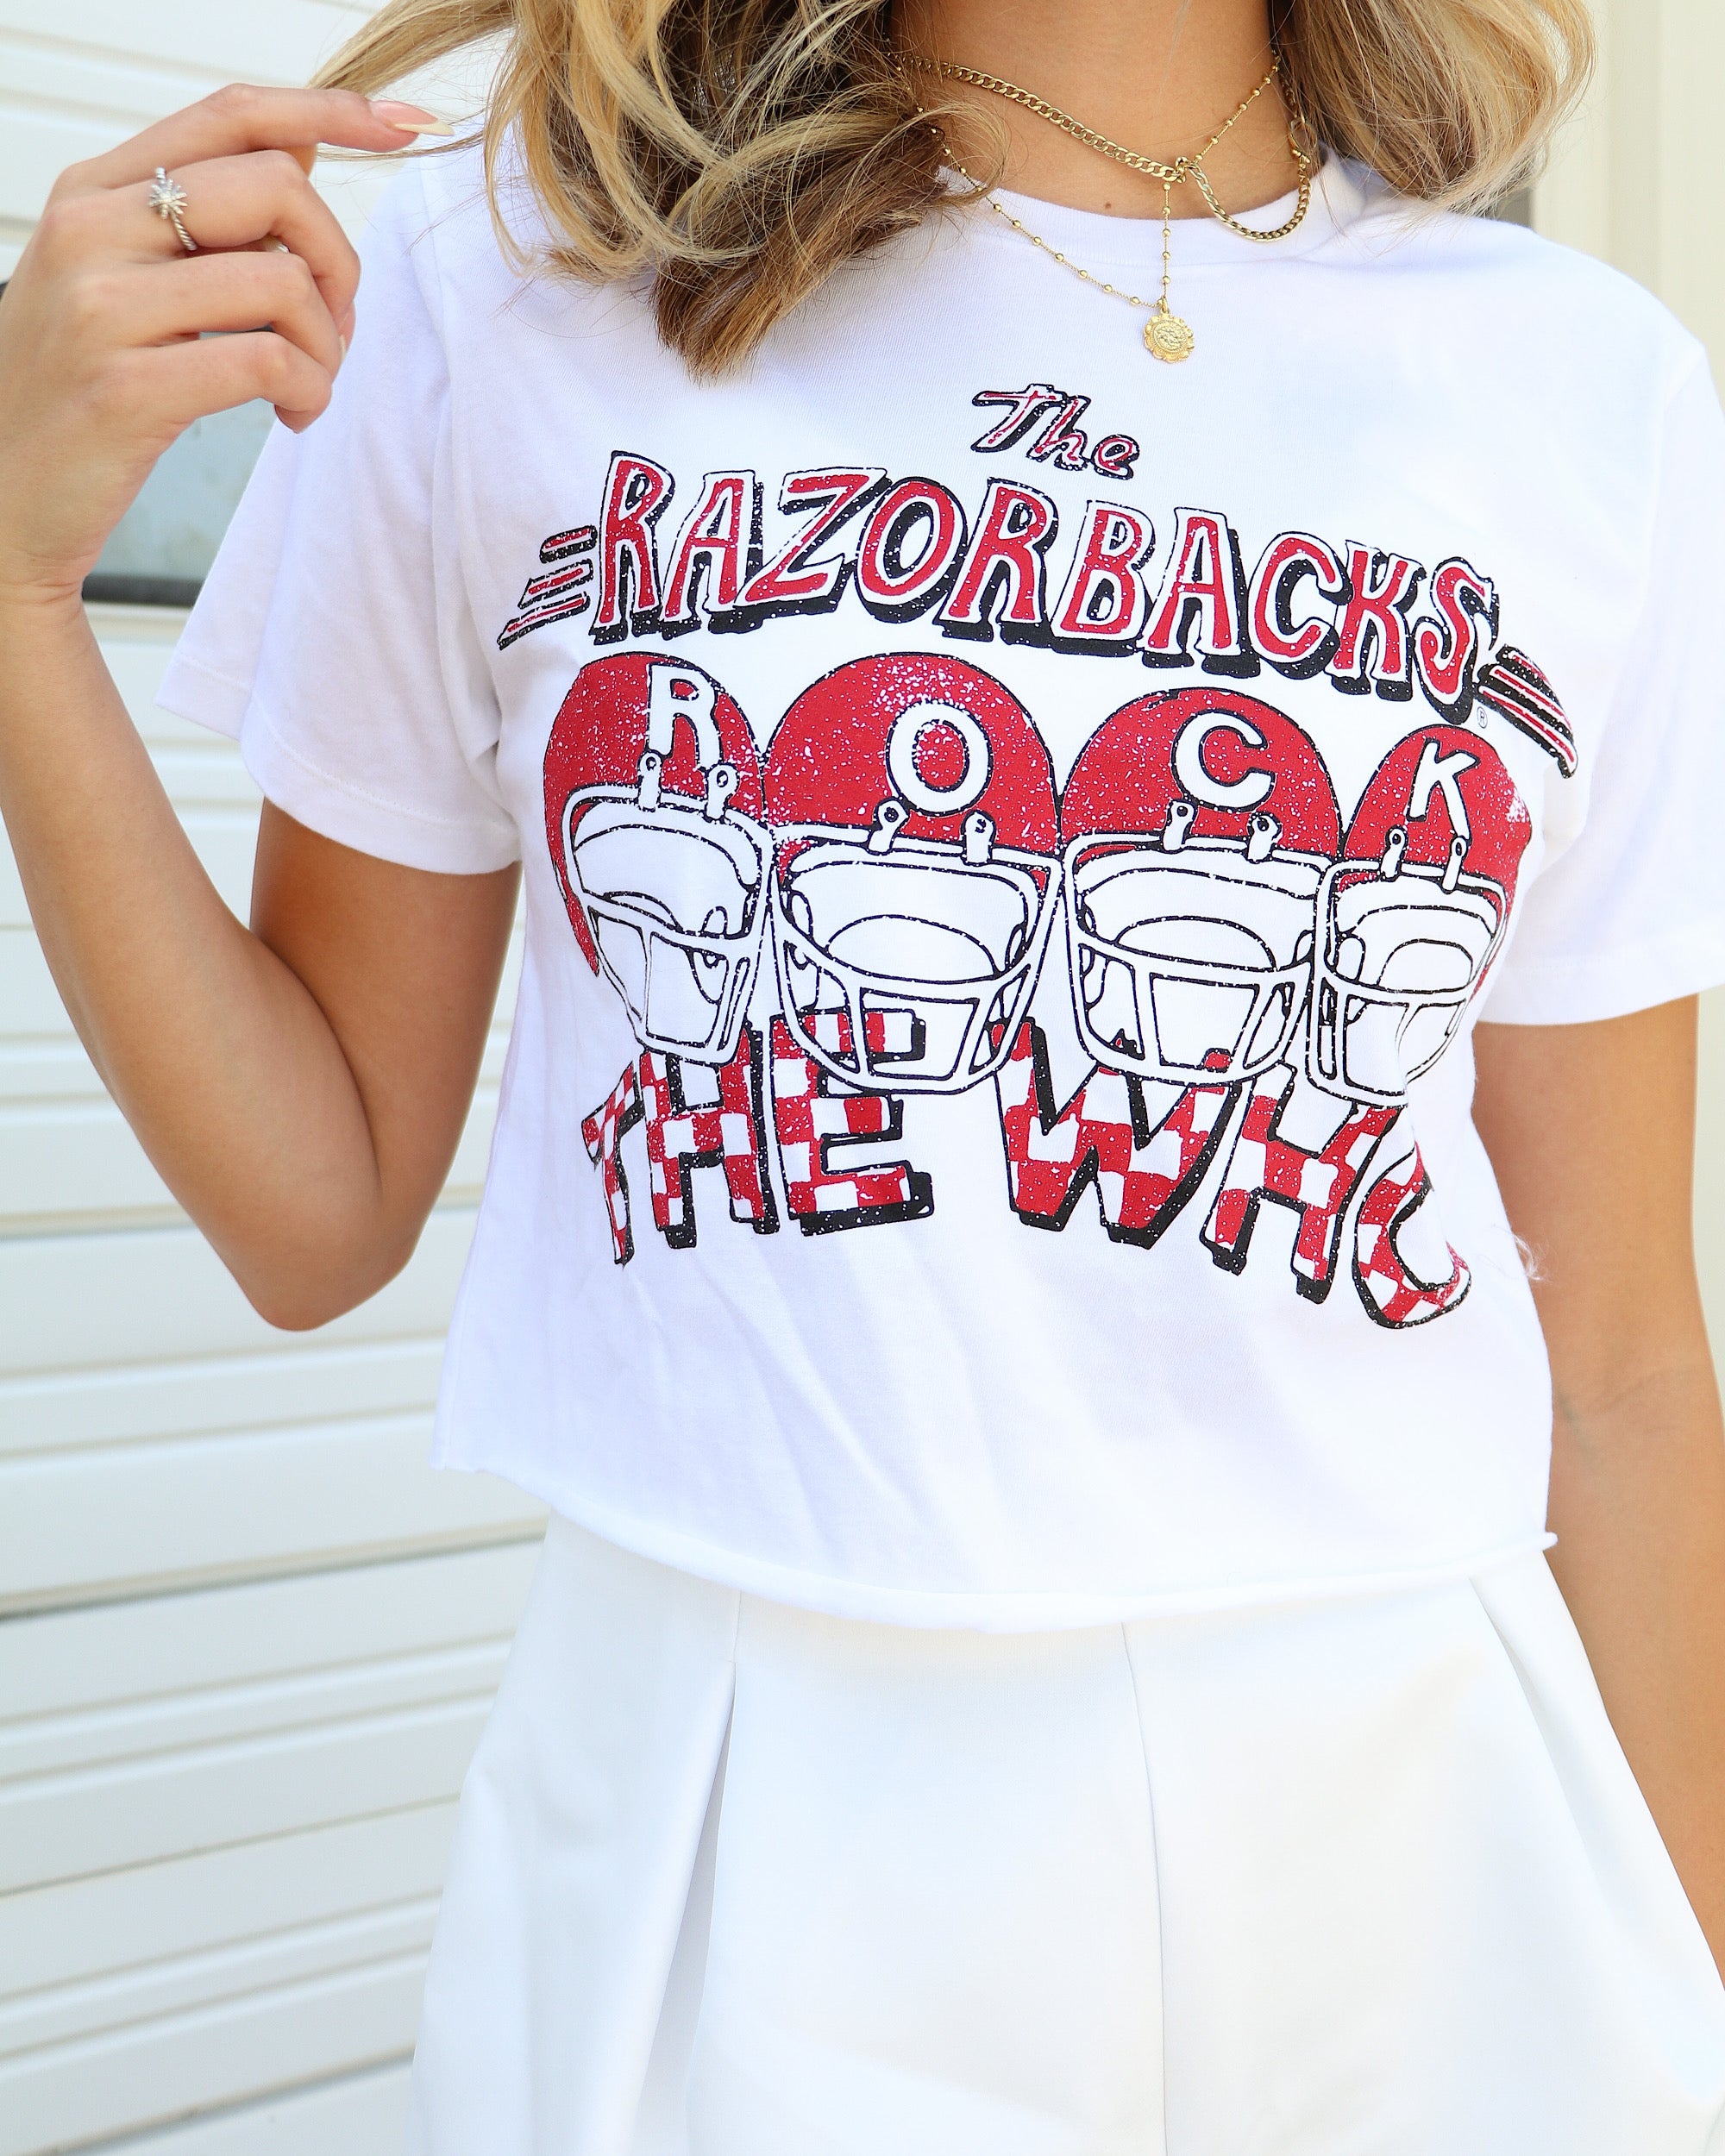 The Who Arkansas Razorbacks Rock White Cropped Tee - shoplivylu